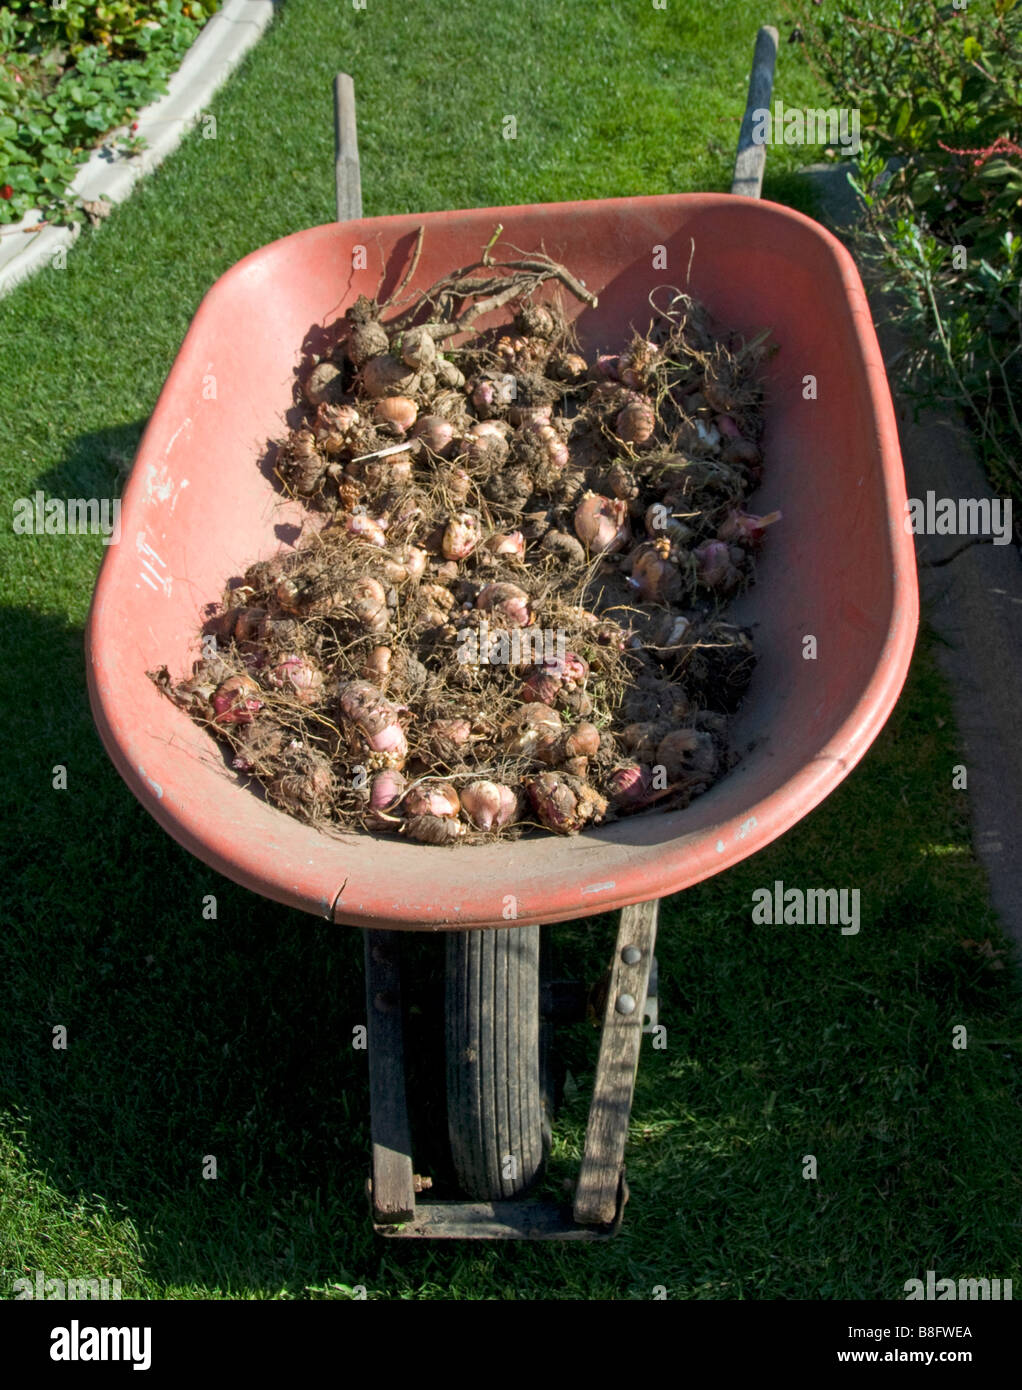 Stock photo of wheel barrel full of flower bulbs Stock Photo